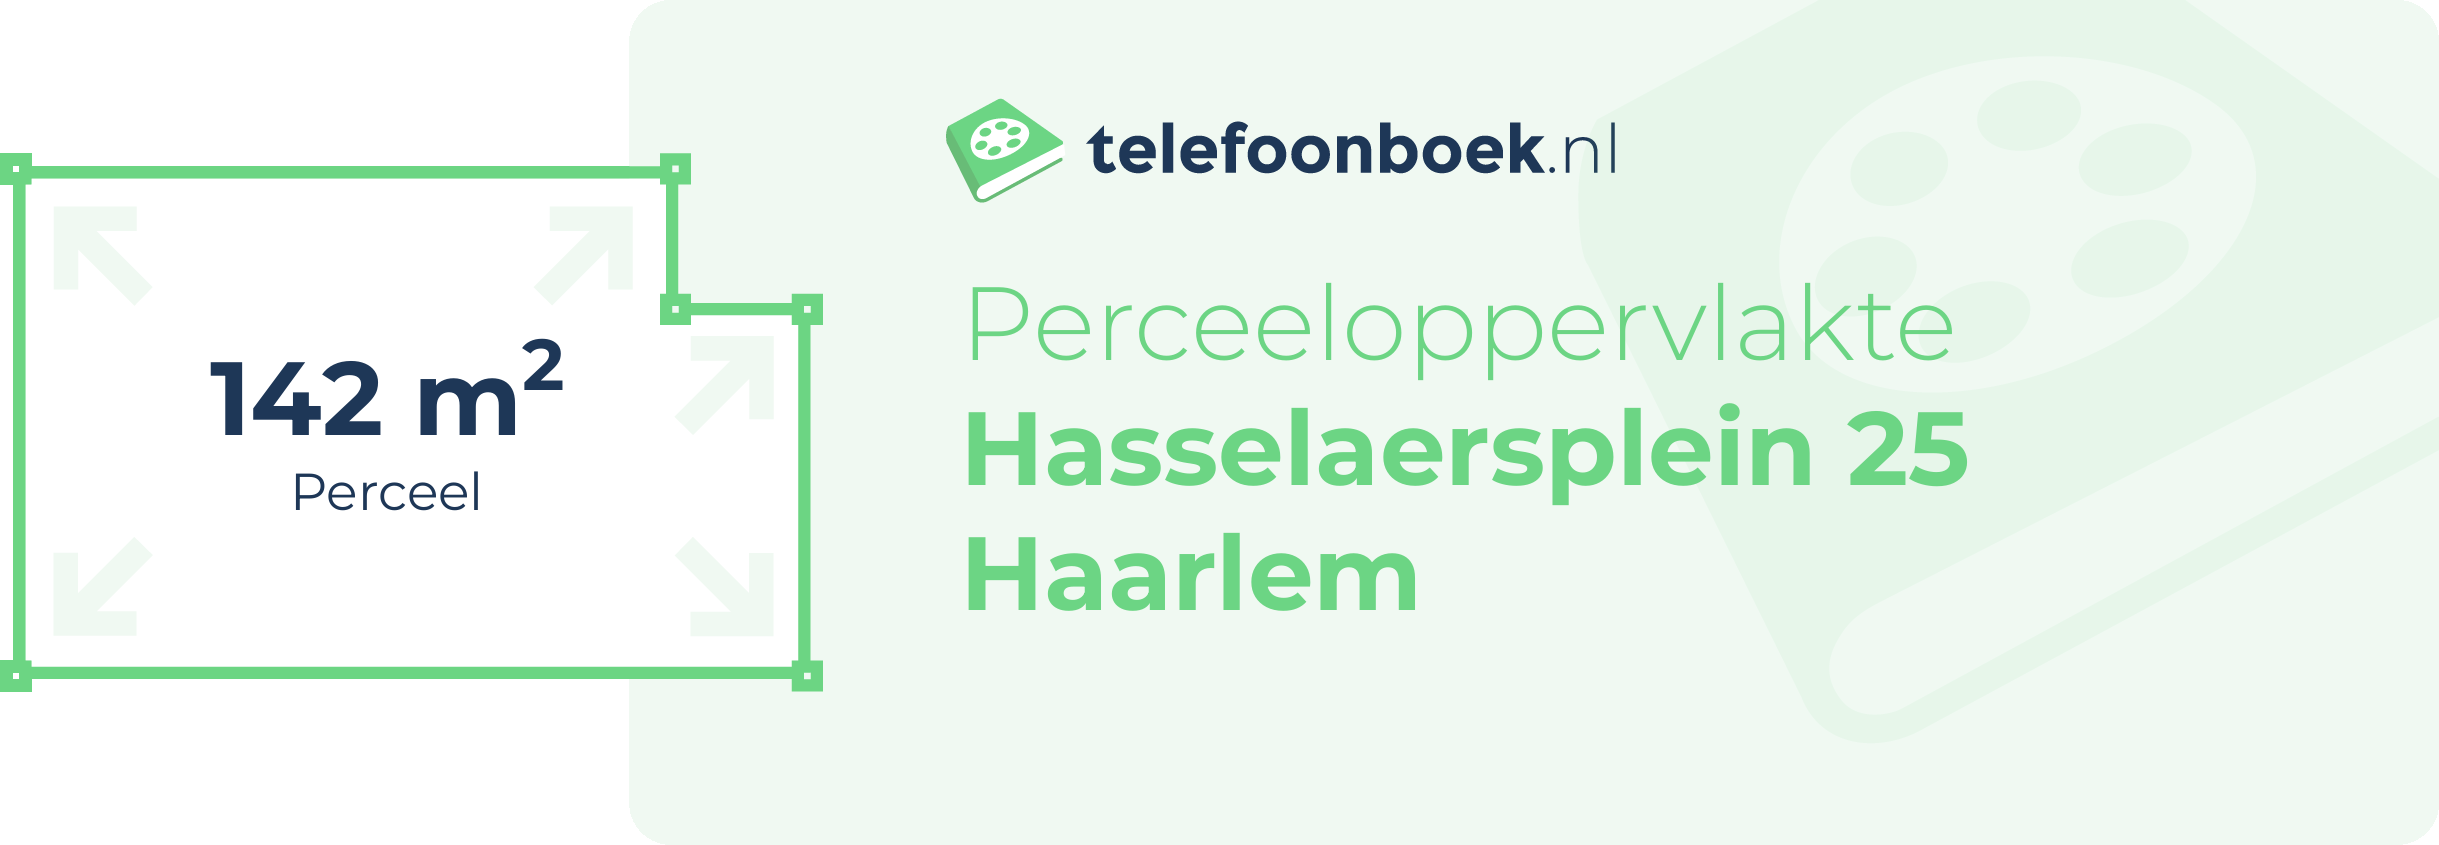 Perceeloppervlakte Hasselaersplein 25 Haarlem